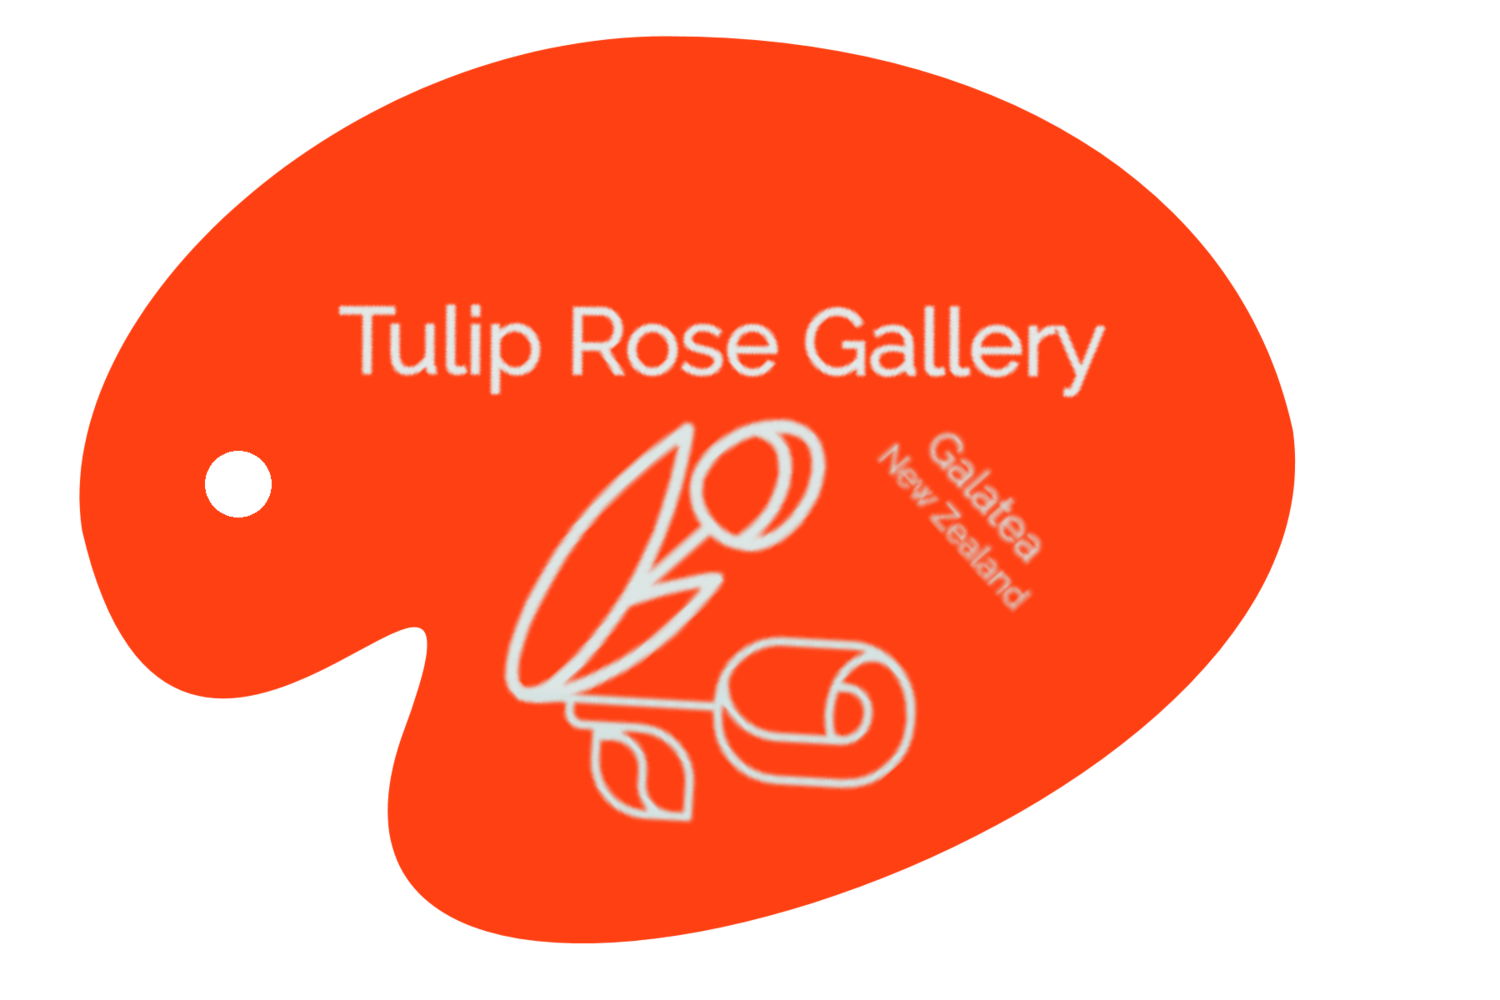 Tulip Rose Gallery